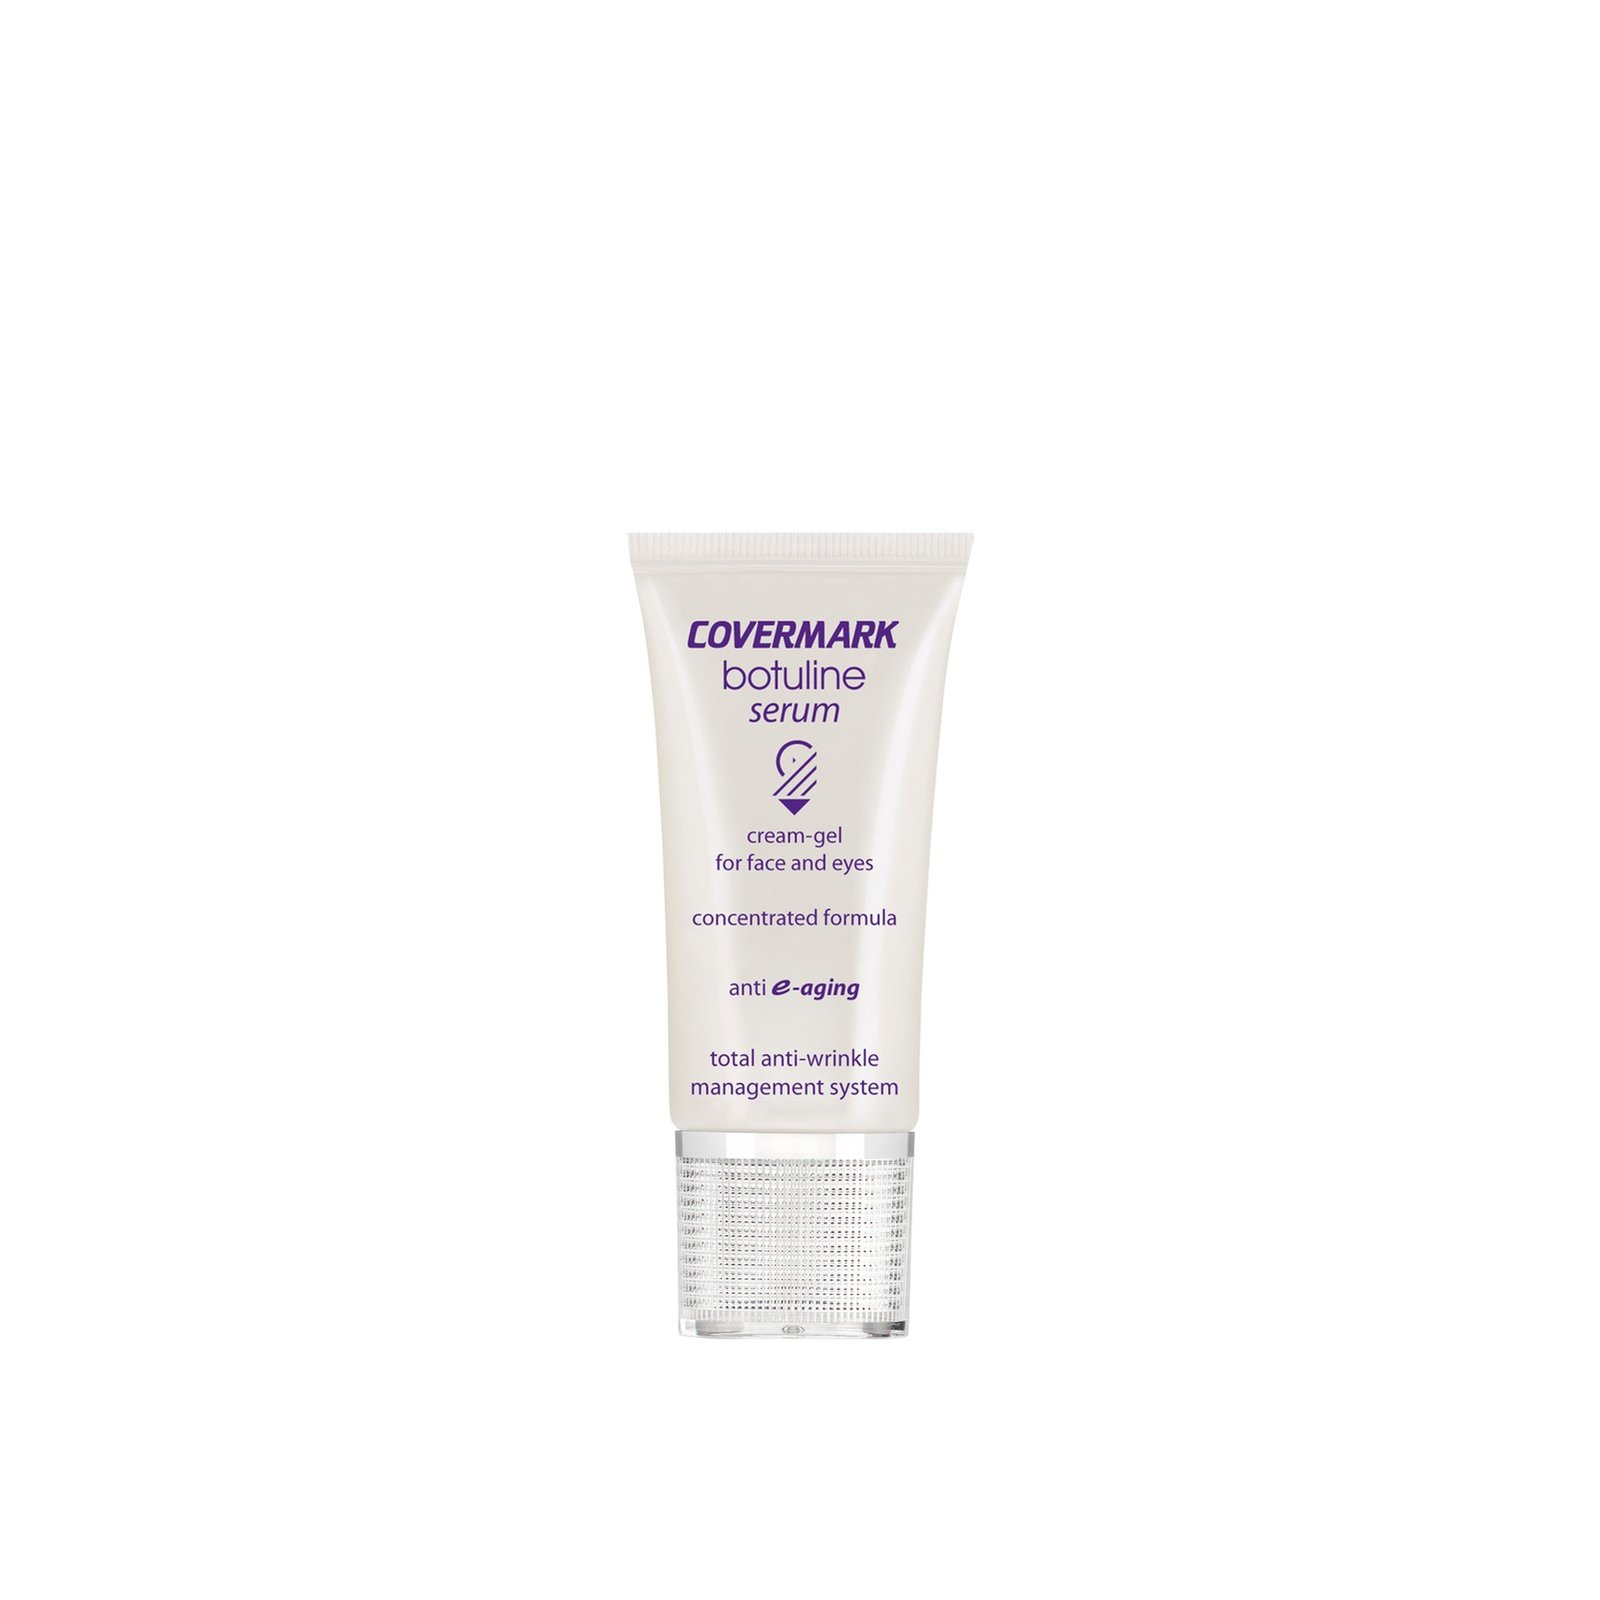 Covermark Botuline Serum Cream-Gel For Face & Eyes Tube 20ml (0.68 fl oz)